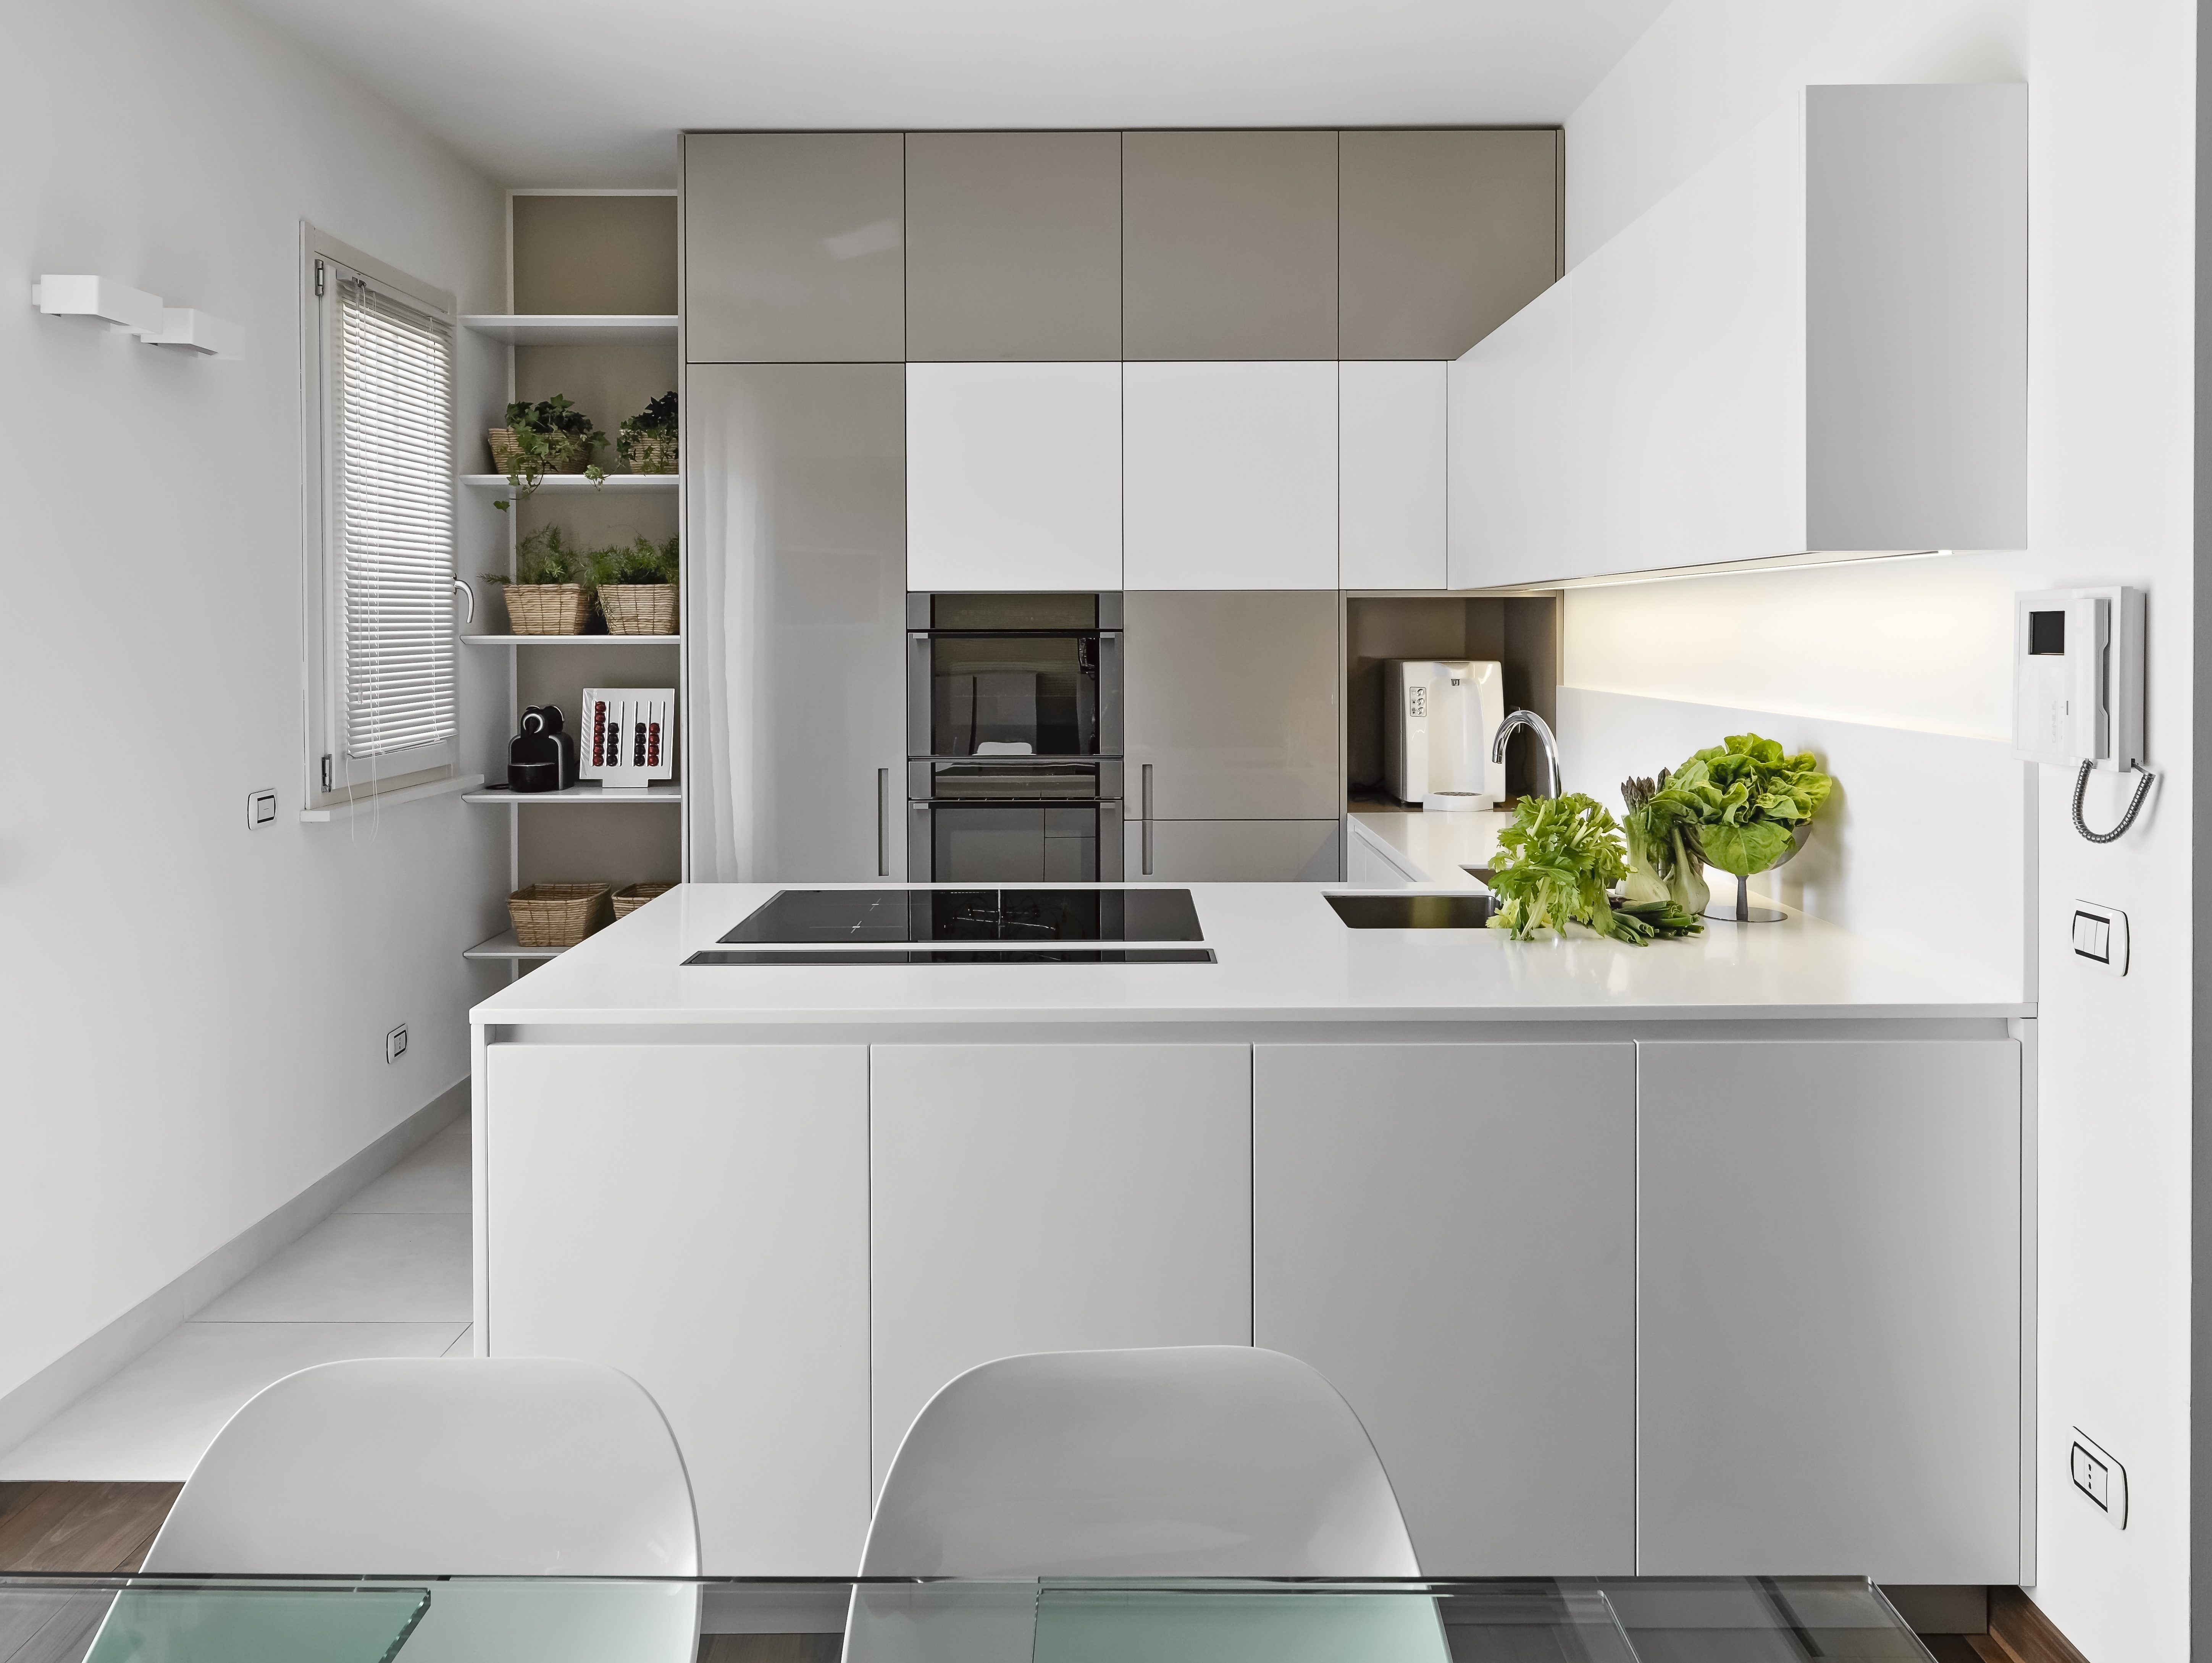  Modern kitchen cabinets- Kitchen Cabinet Designs